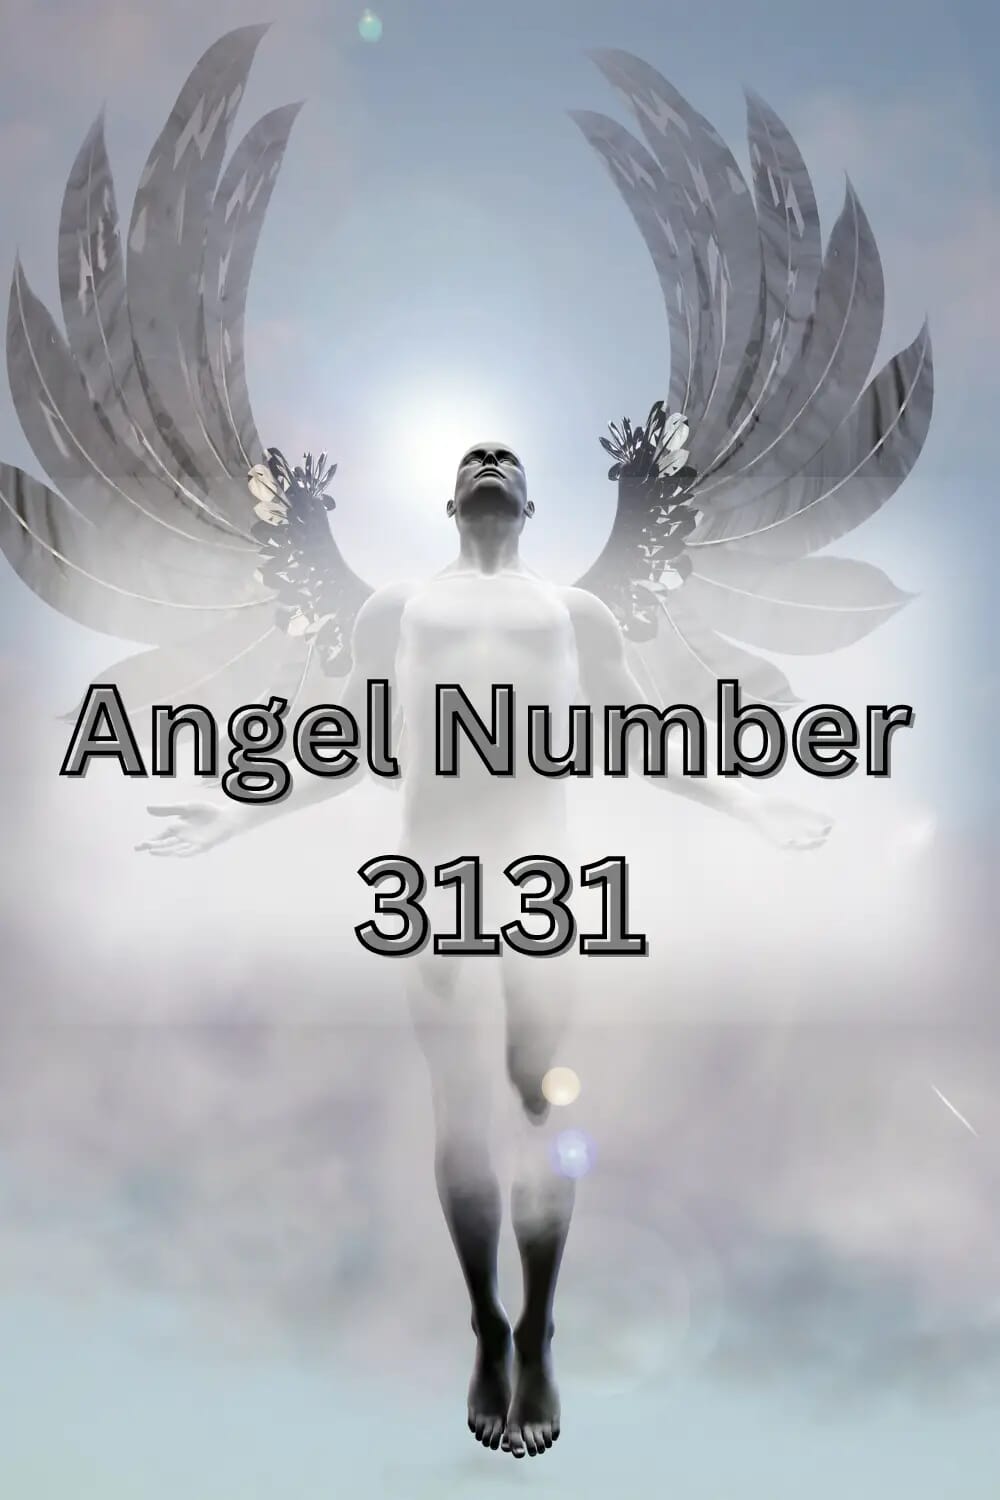 Angel number 3131